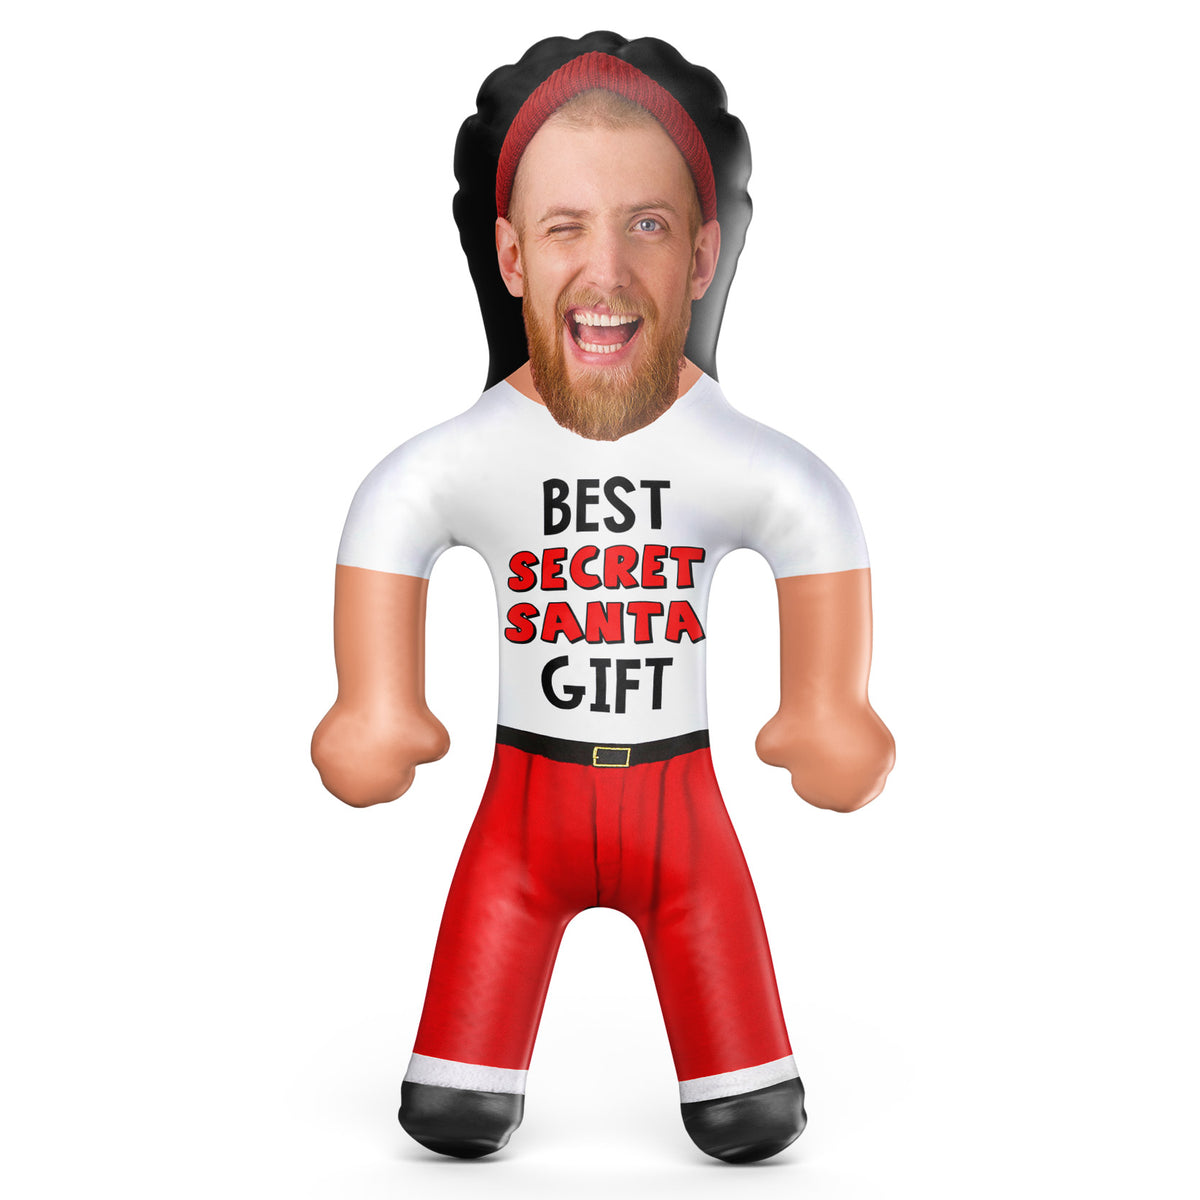 Best Secret Santa Gift